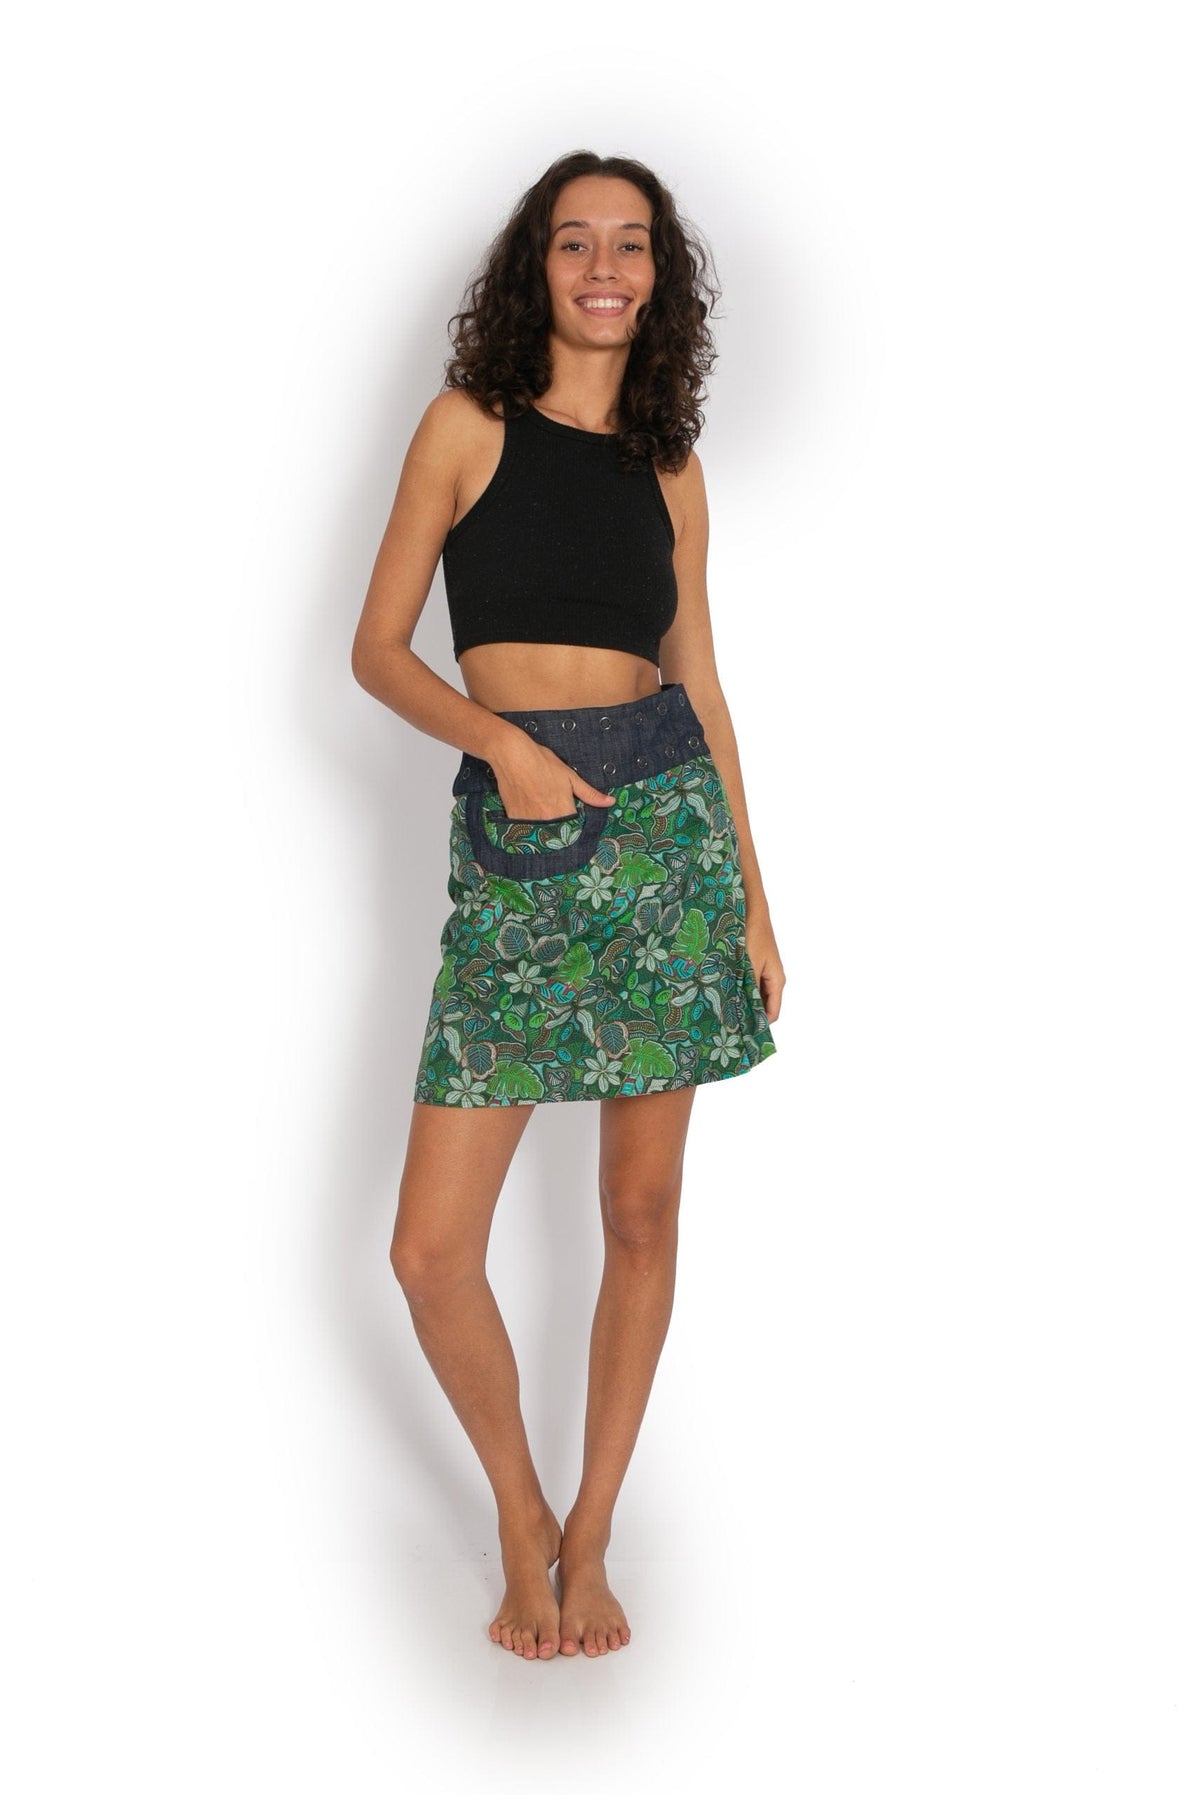 New Energy Reversible Skirt  - Jungle Green / Floral Black - OM Designs - Splash Swimwear  - June23, new arrivals, new womens, OM Designs, skirts - Splash Swimwear 